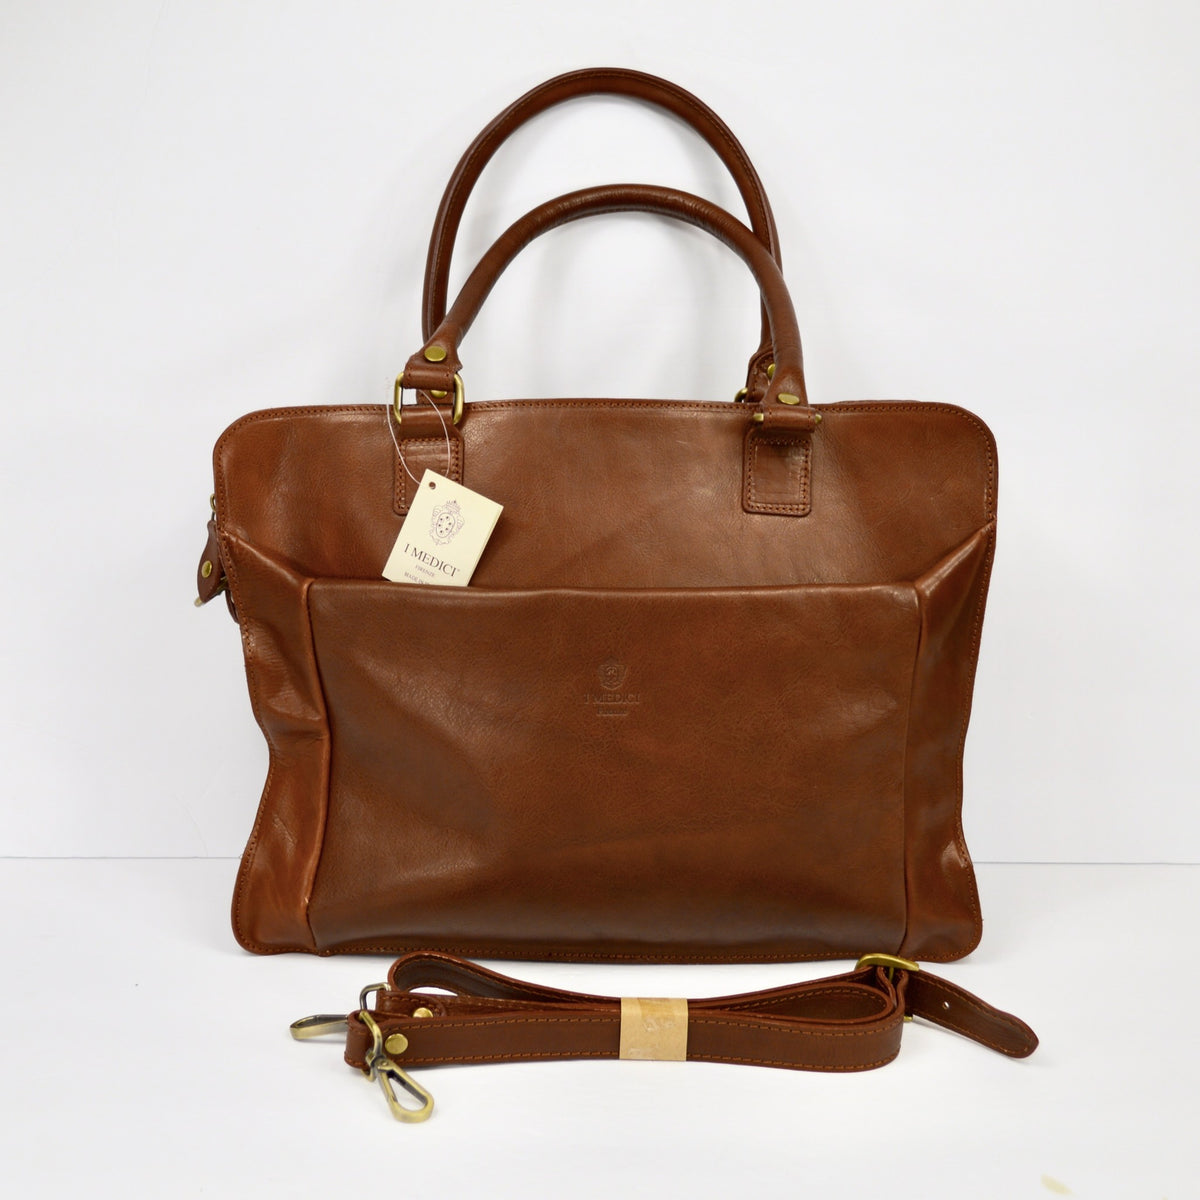 Ponte Vecchio Briefcase, Italian Leather, Made in Italy - My Italian Decor